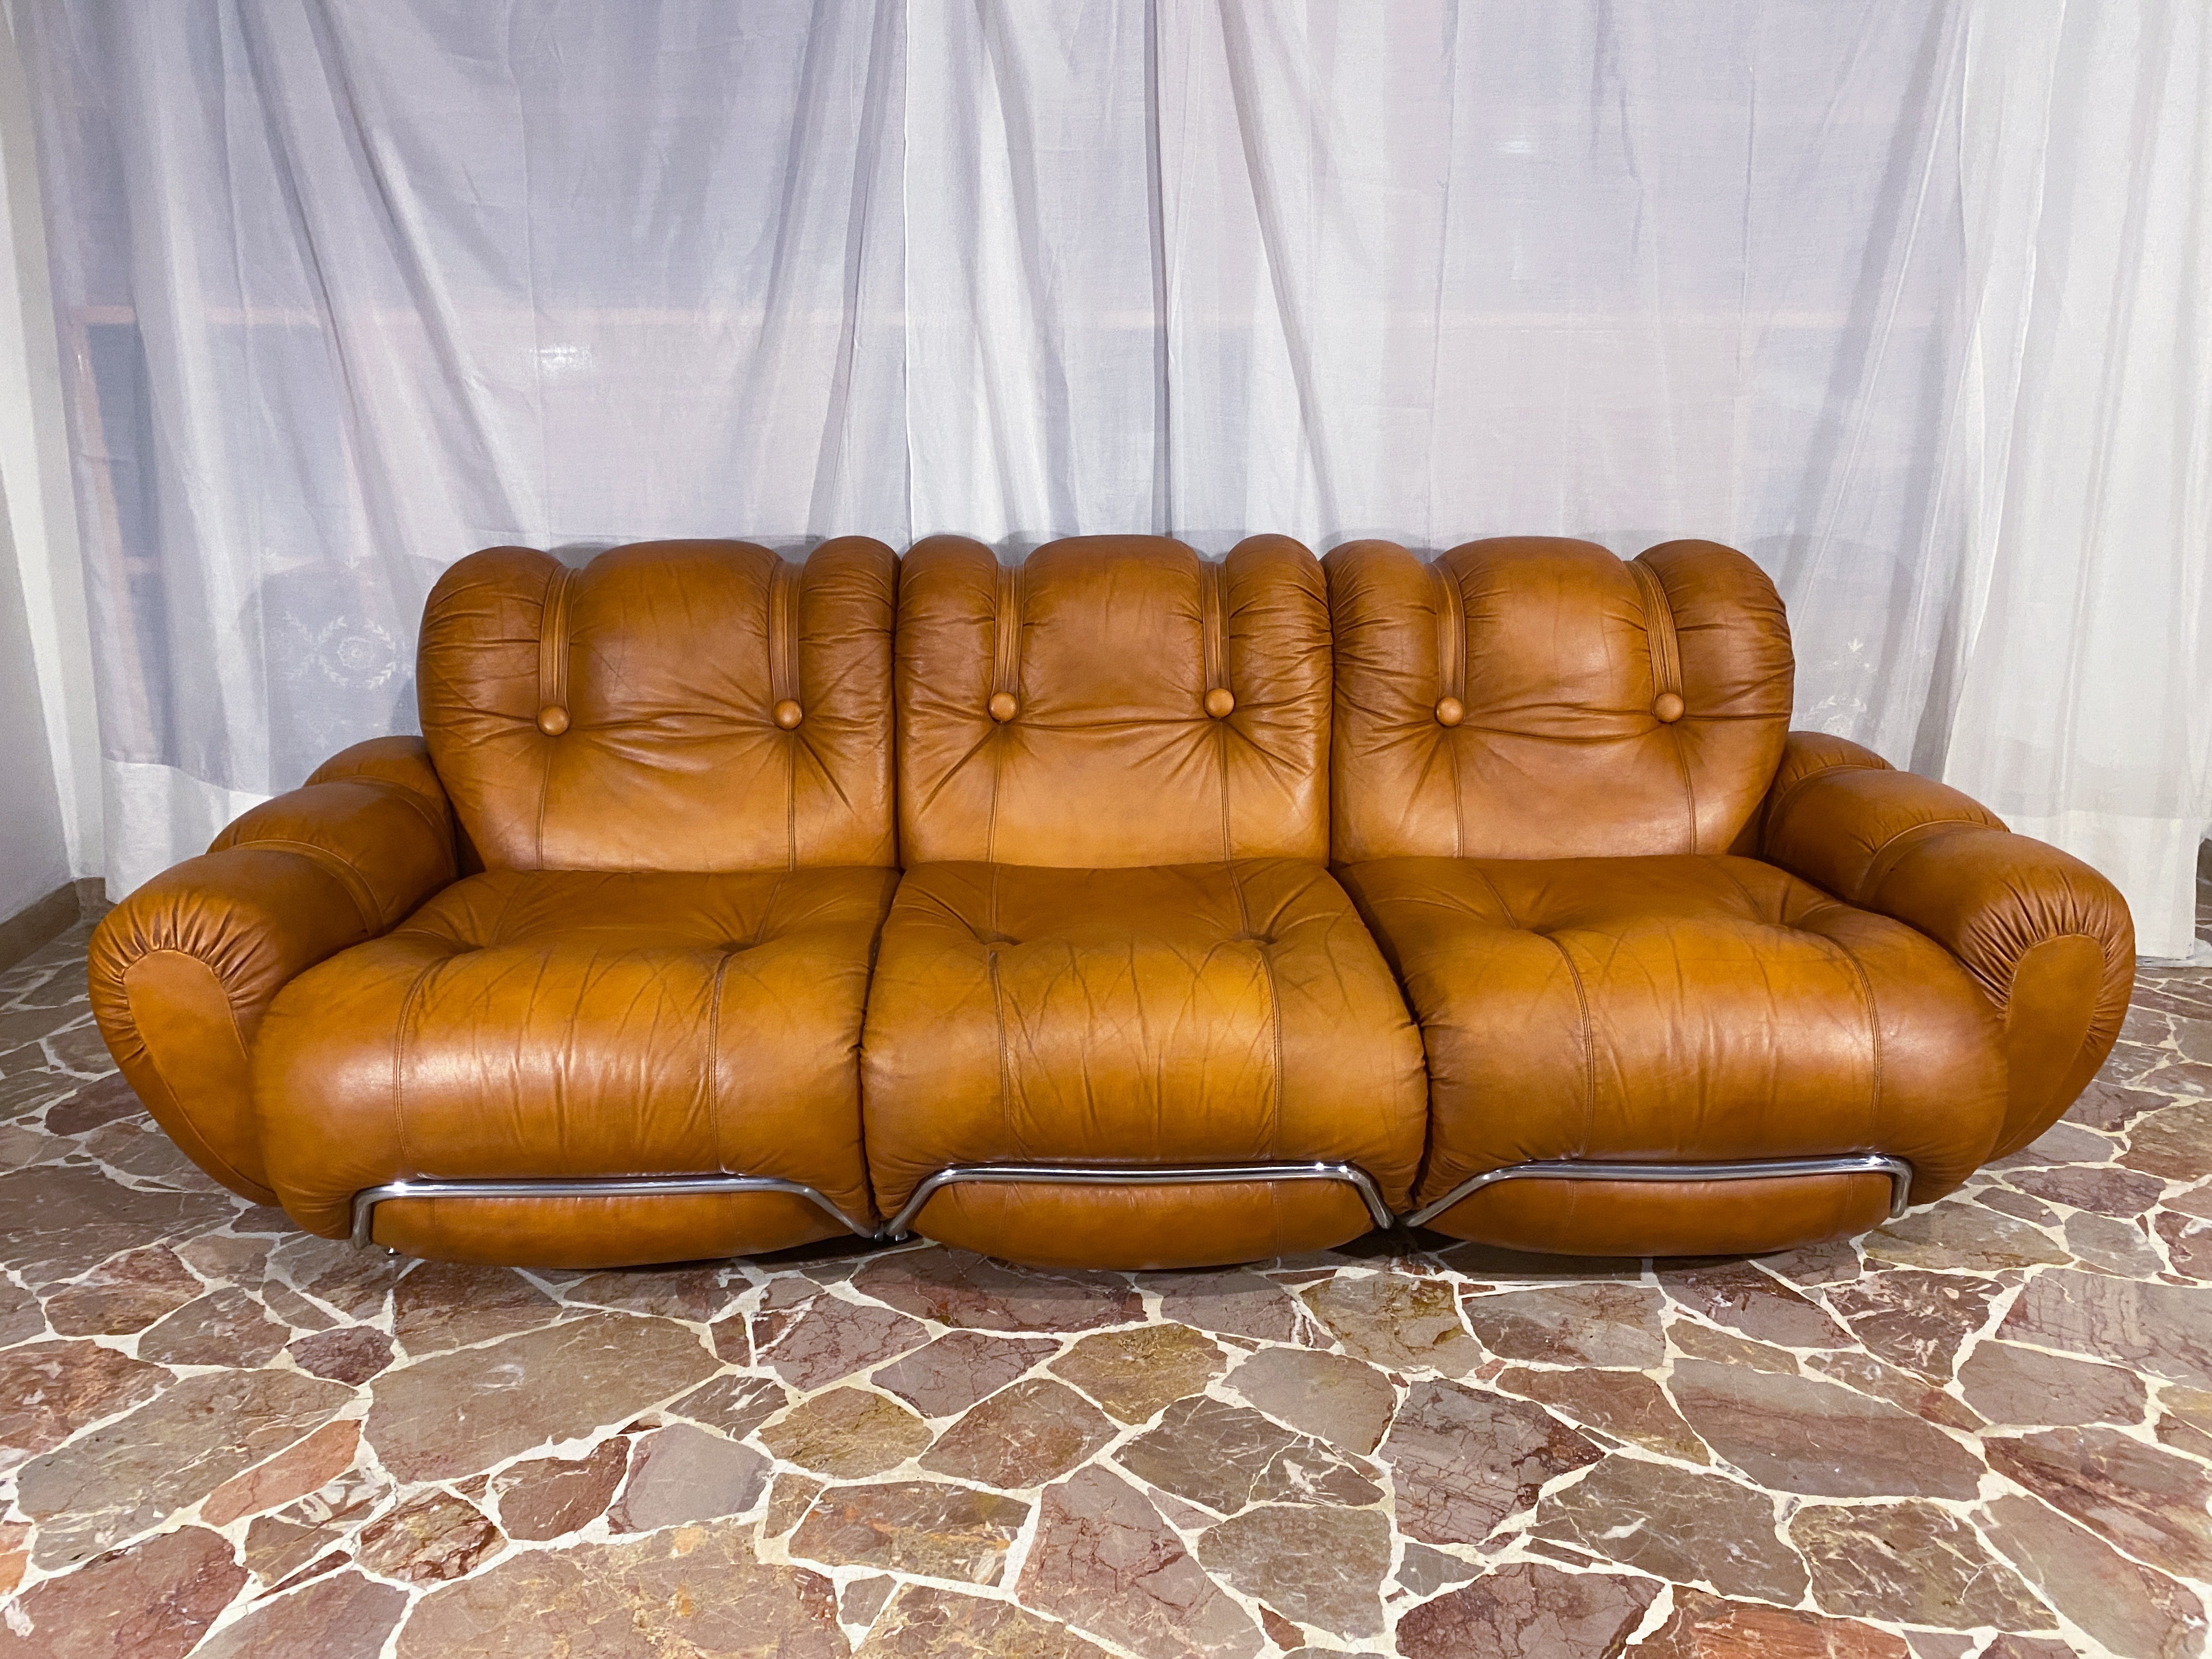 Magnifique canapé trois places fabriqué en Italie dans les années 70. Le siège est très confortable et offre un bon soutien. Les pads sont encore d'origine et en très bon état. Sellerie en cuir naturel d'origine en très bon état de l'époque, un